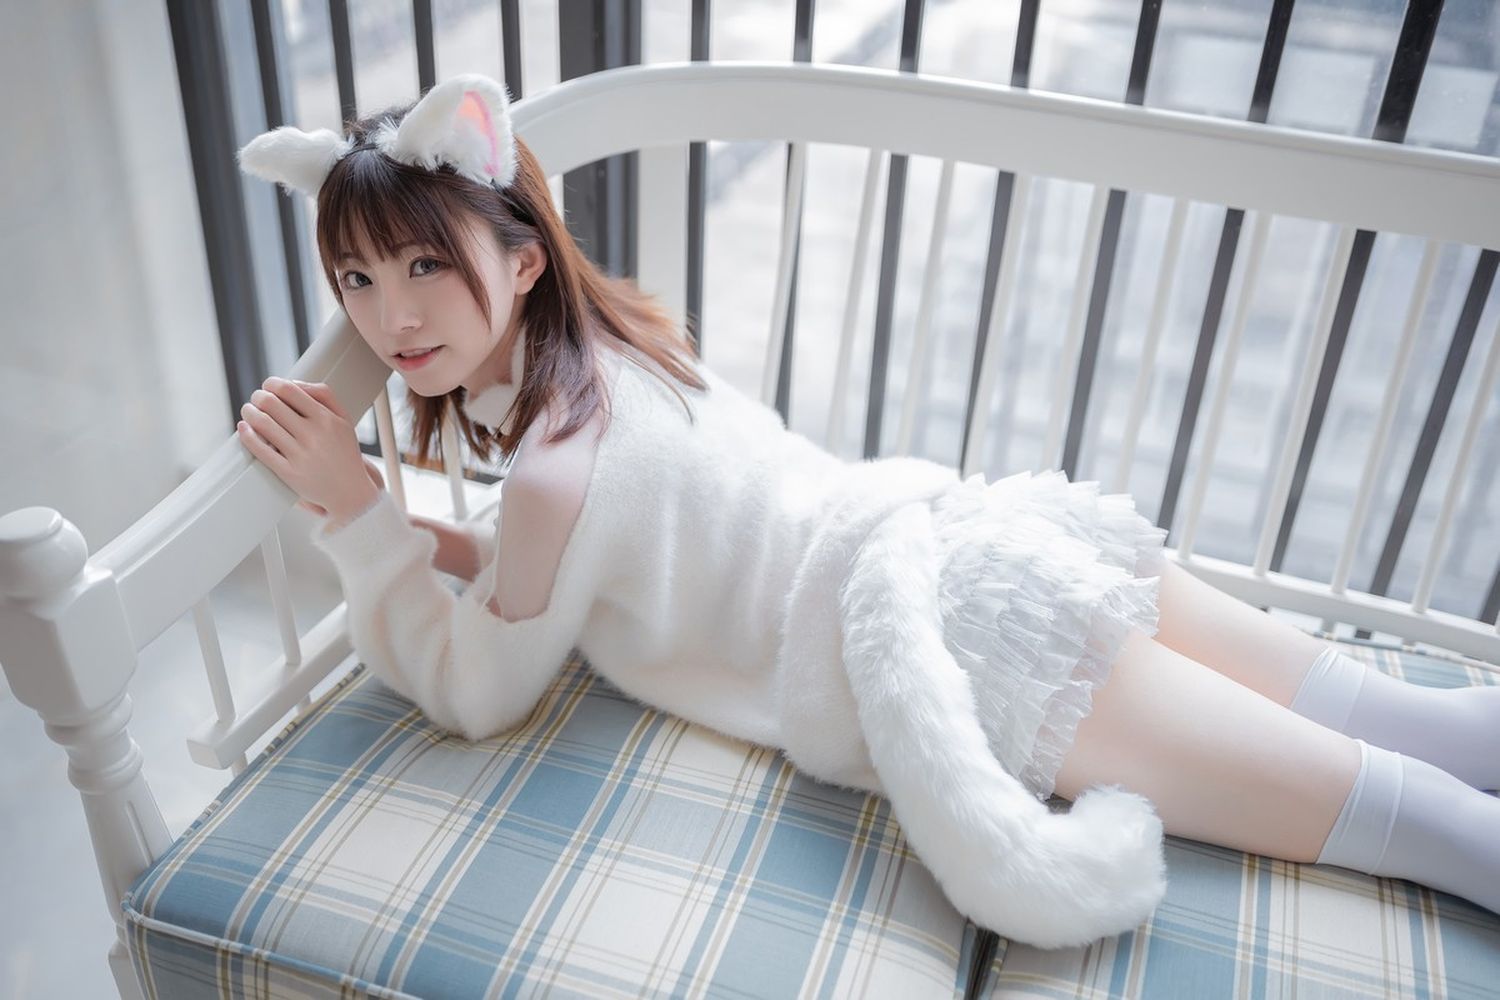 动漫博主Kitaro绮太郎纯白绒毛服饰白喵女友兔女郎主题写真